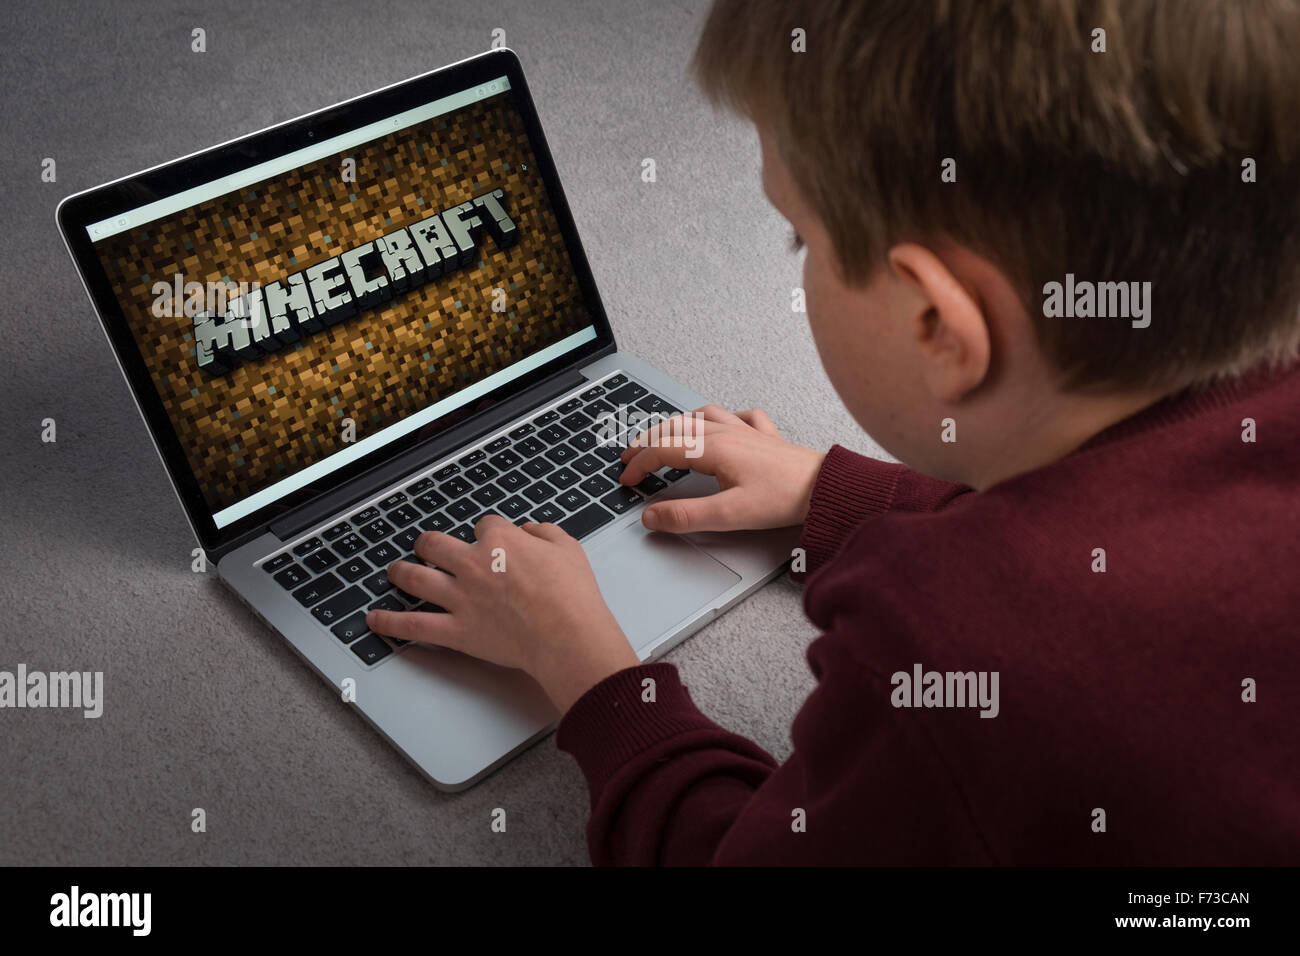 Ein Kind spielt Minecraft Computerspiel auf einem laptop Stockfoto